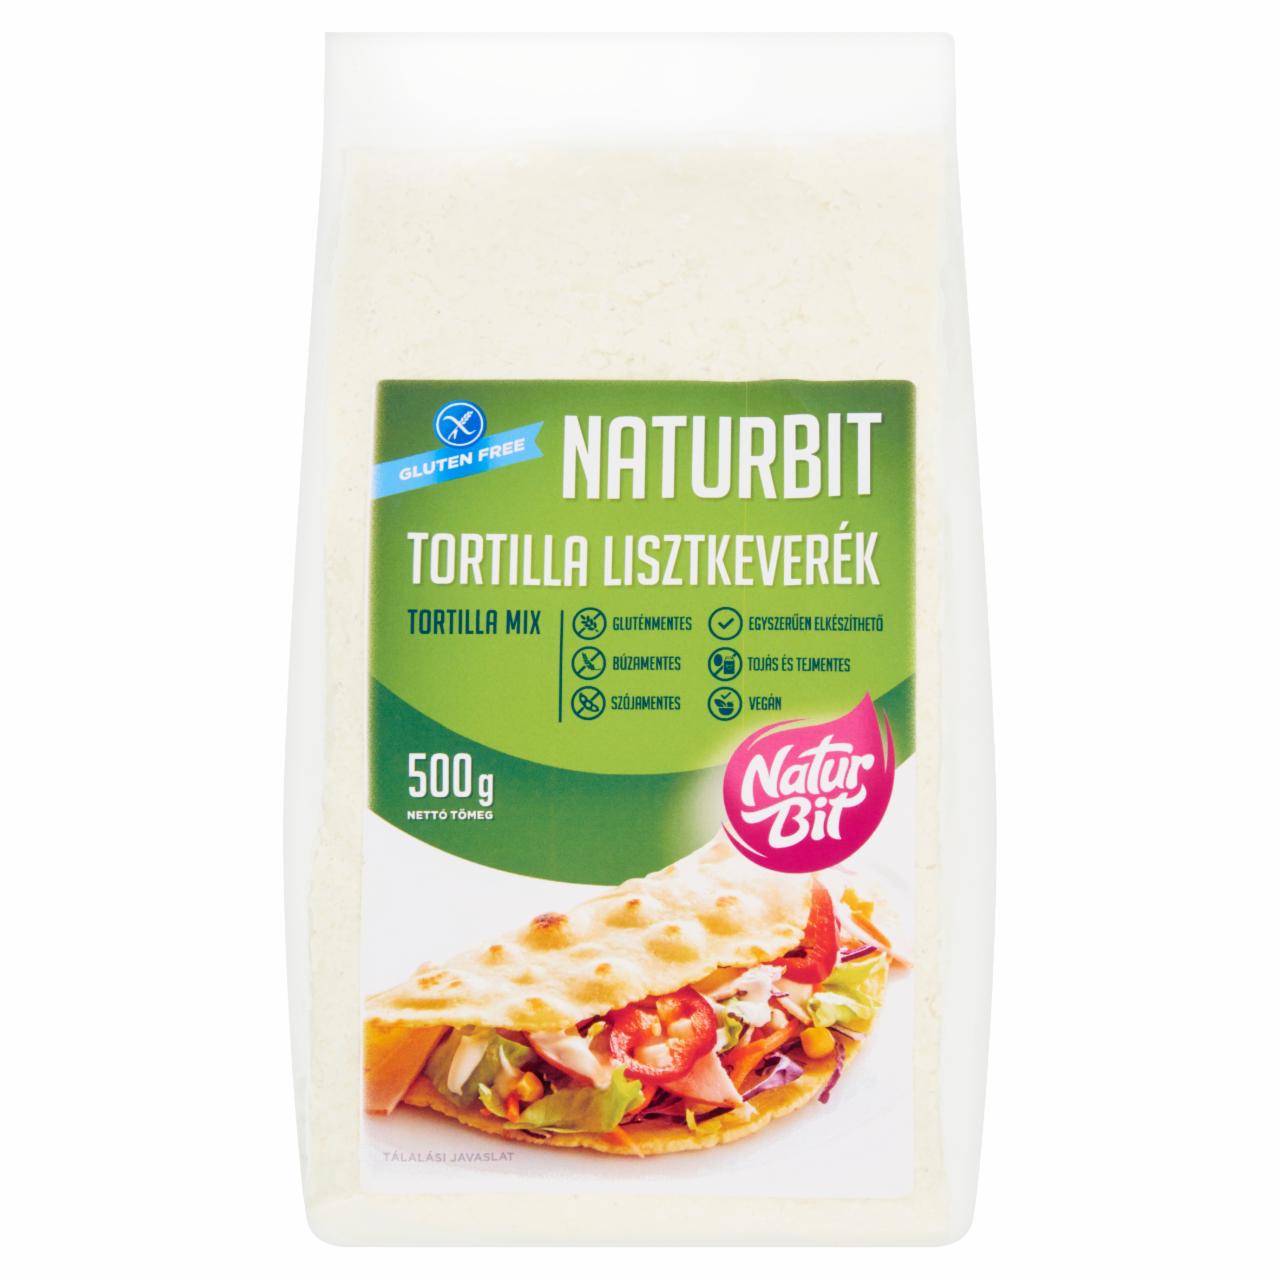 Képek - Naturbit tortilla tésztaliszt 500 g